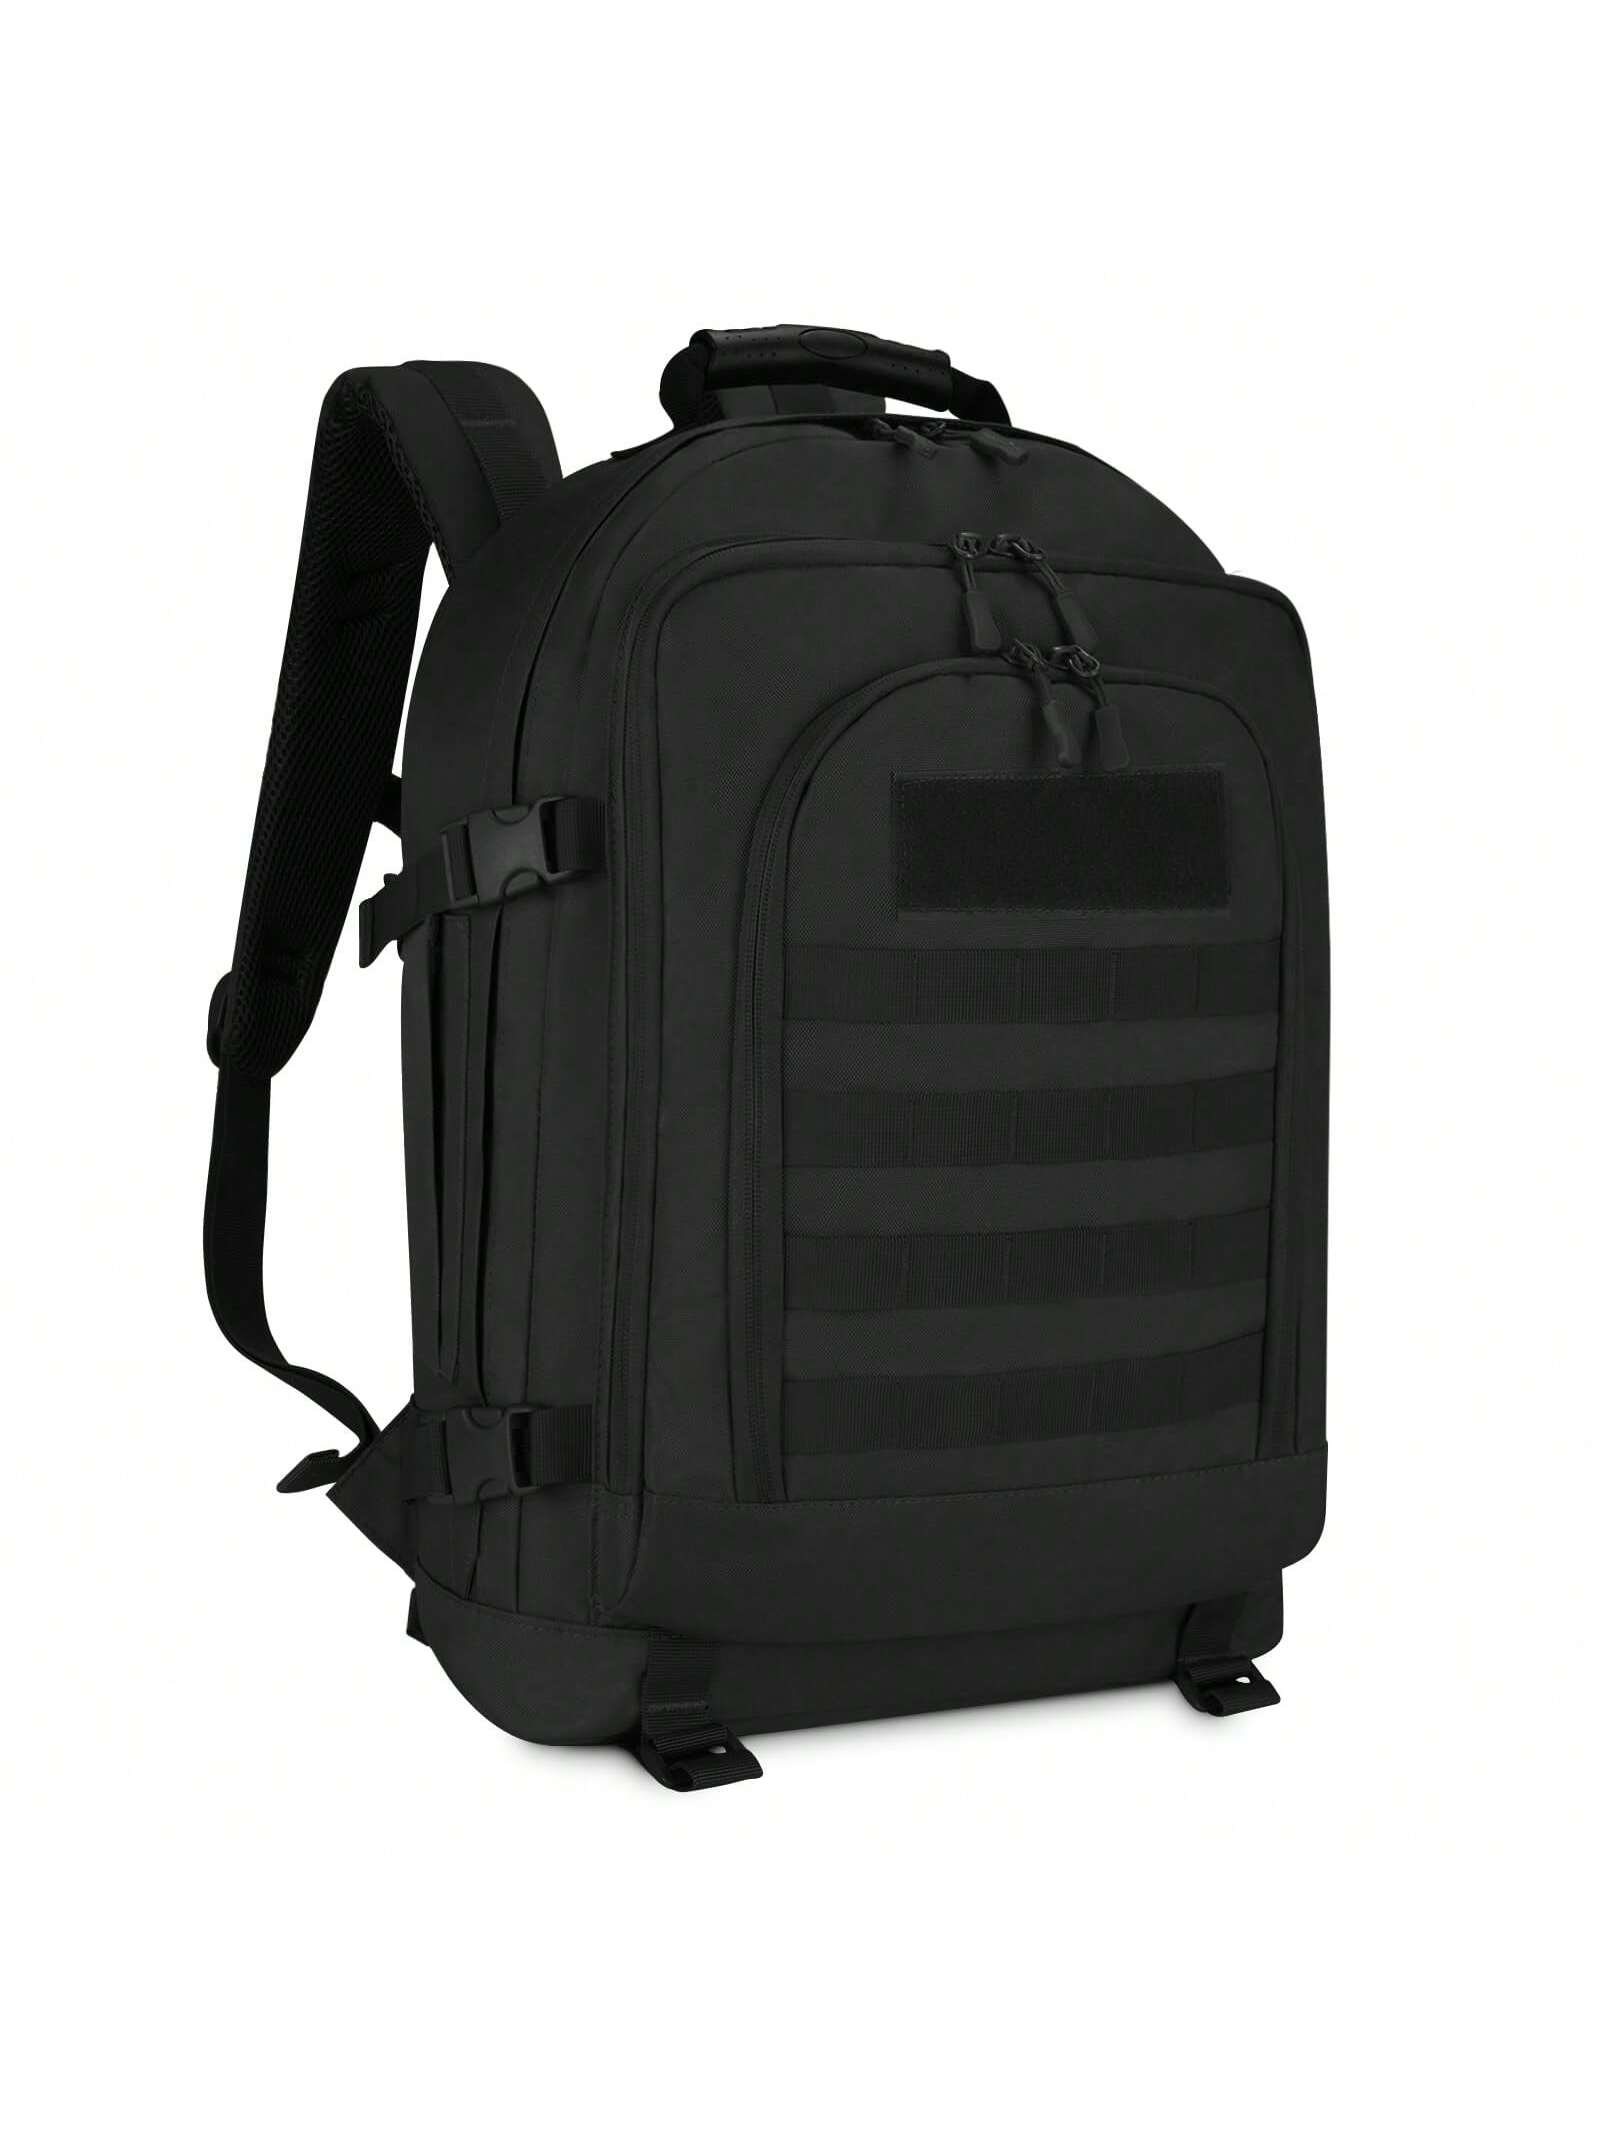 HUNTVP Тактический рюкзак MOLLE Охотничий рюкзак Gear Assault Pack 45L Расширяемый уличный рюкзак, черный